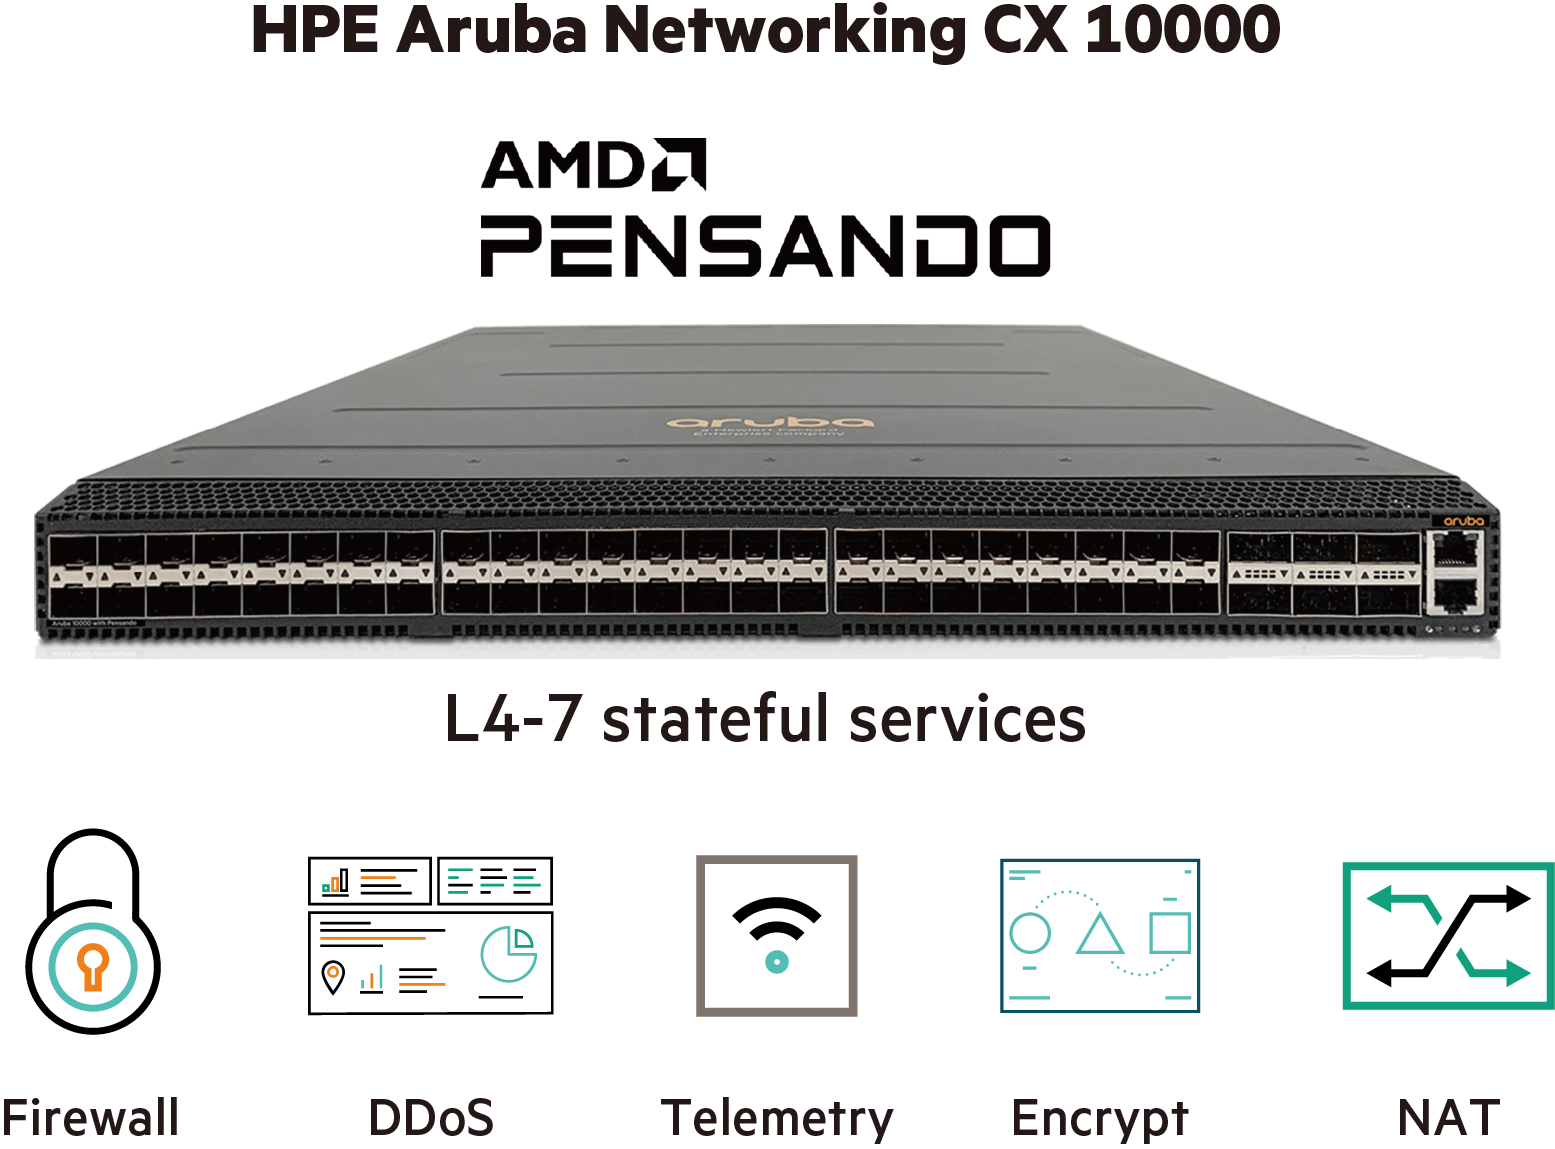 HPE Aruba Networking CX 10000 AMD Pensando L4-7 Stateful services